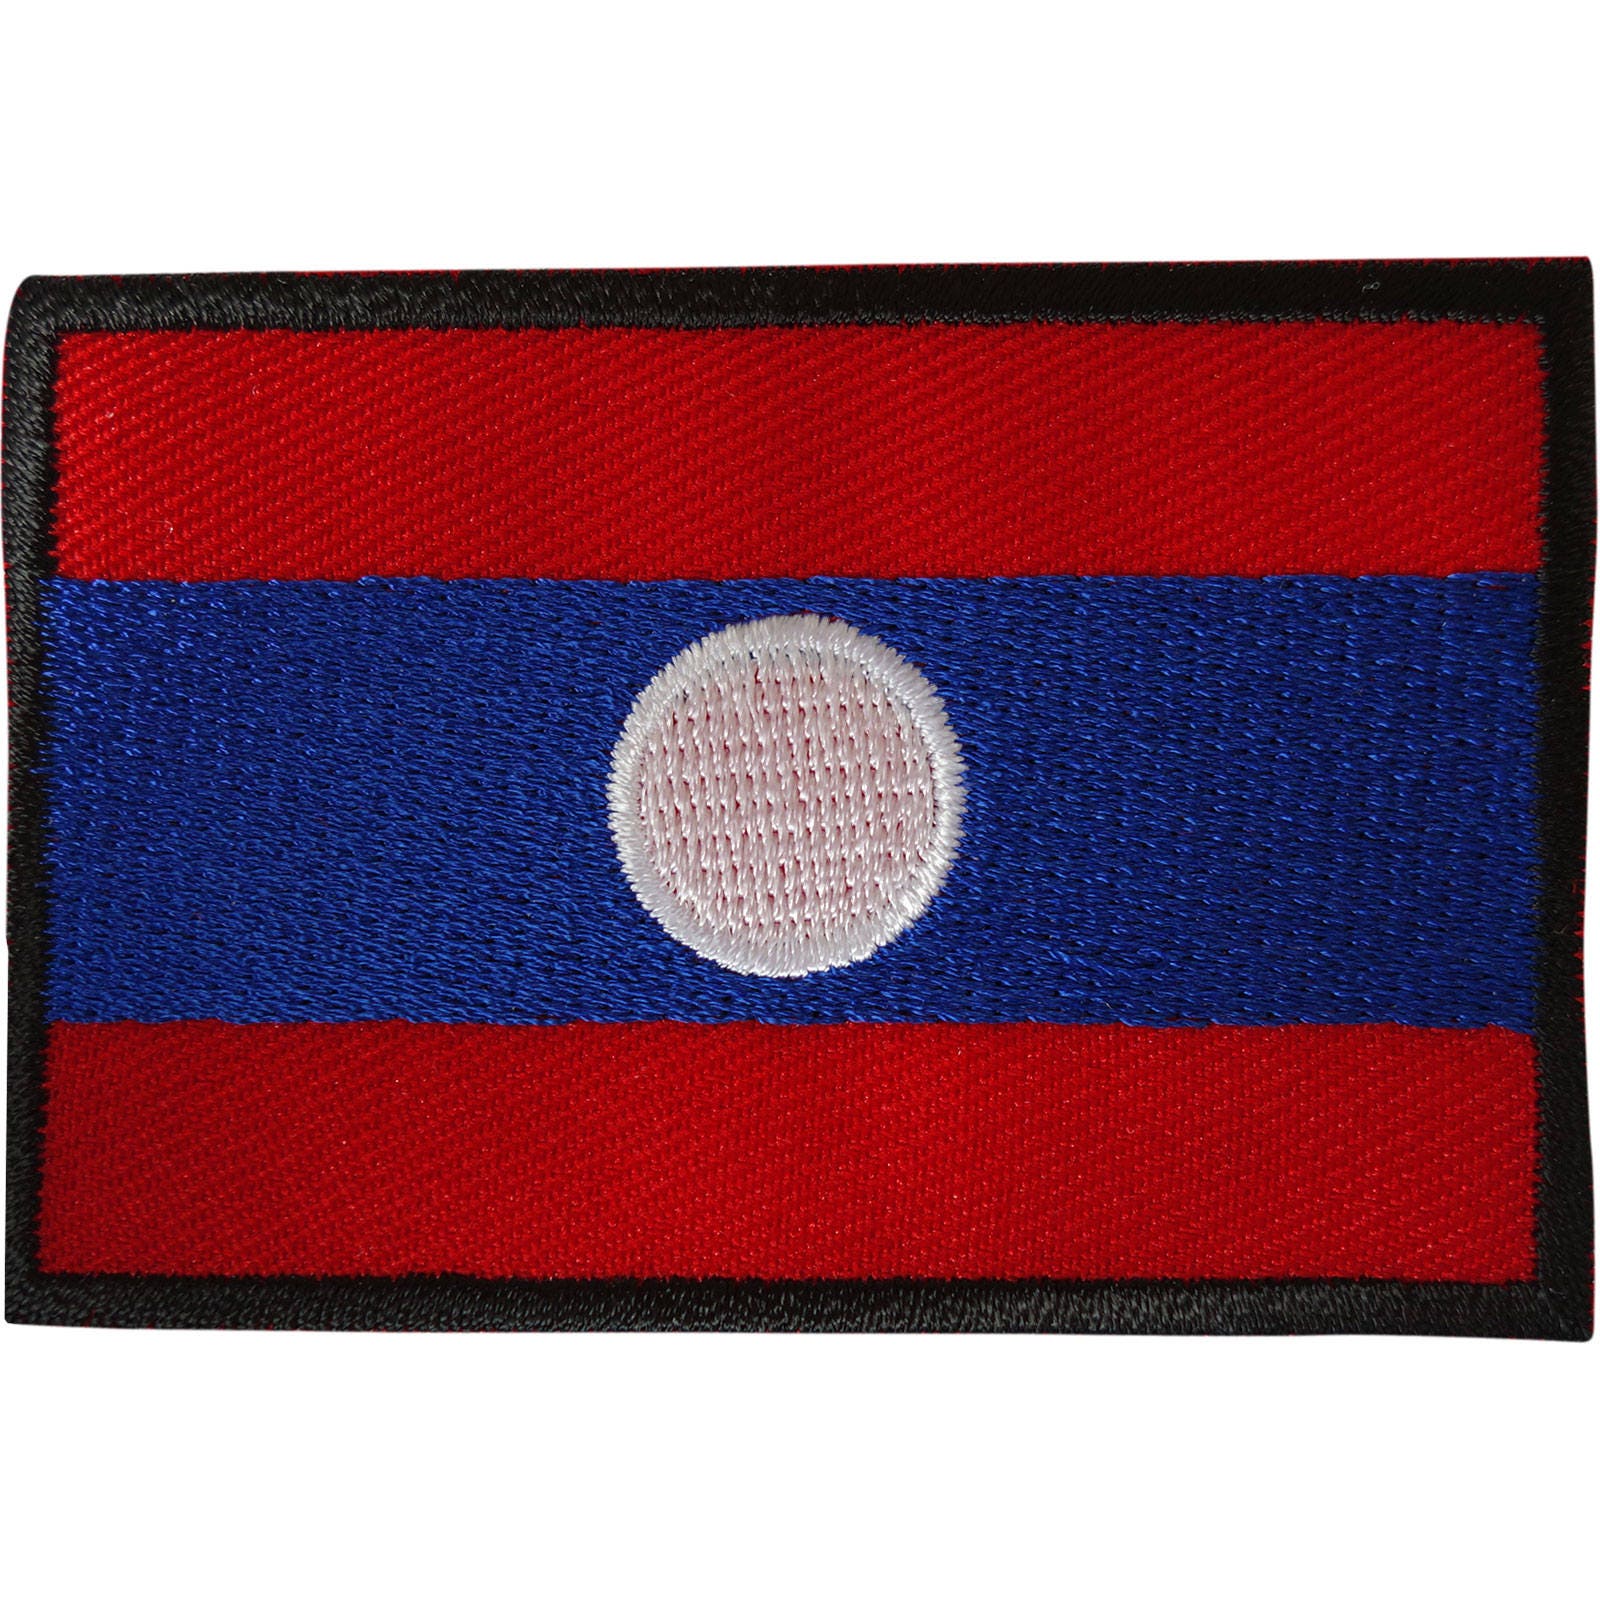 Laos Drapeau Patch fer à repasser sur coudre sur les vêtements à broder Lao badge brodée Applique